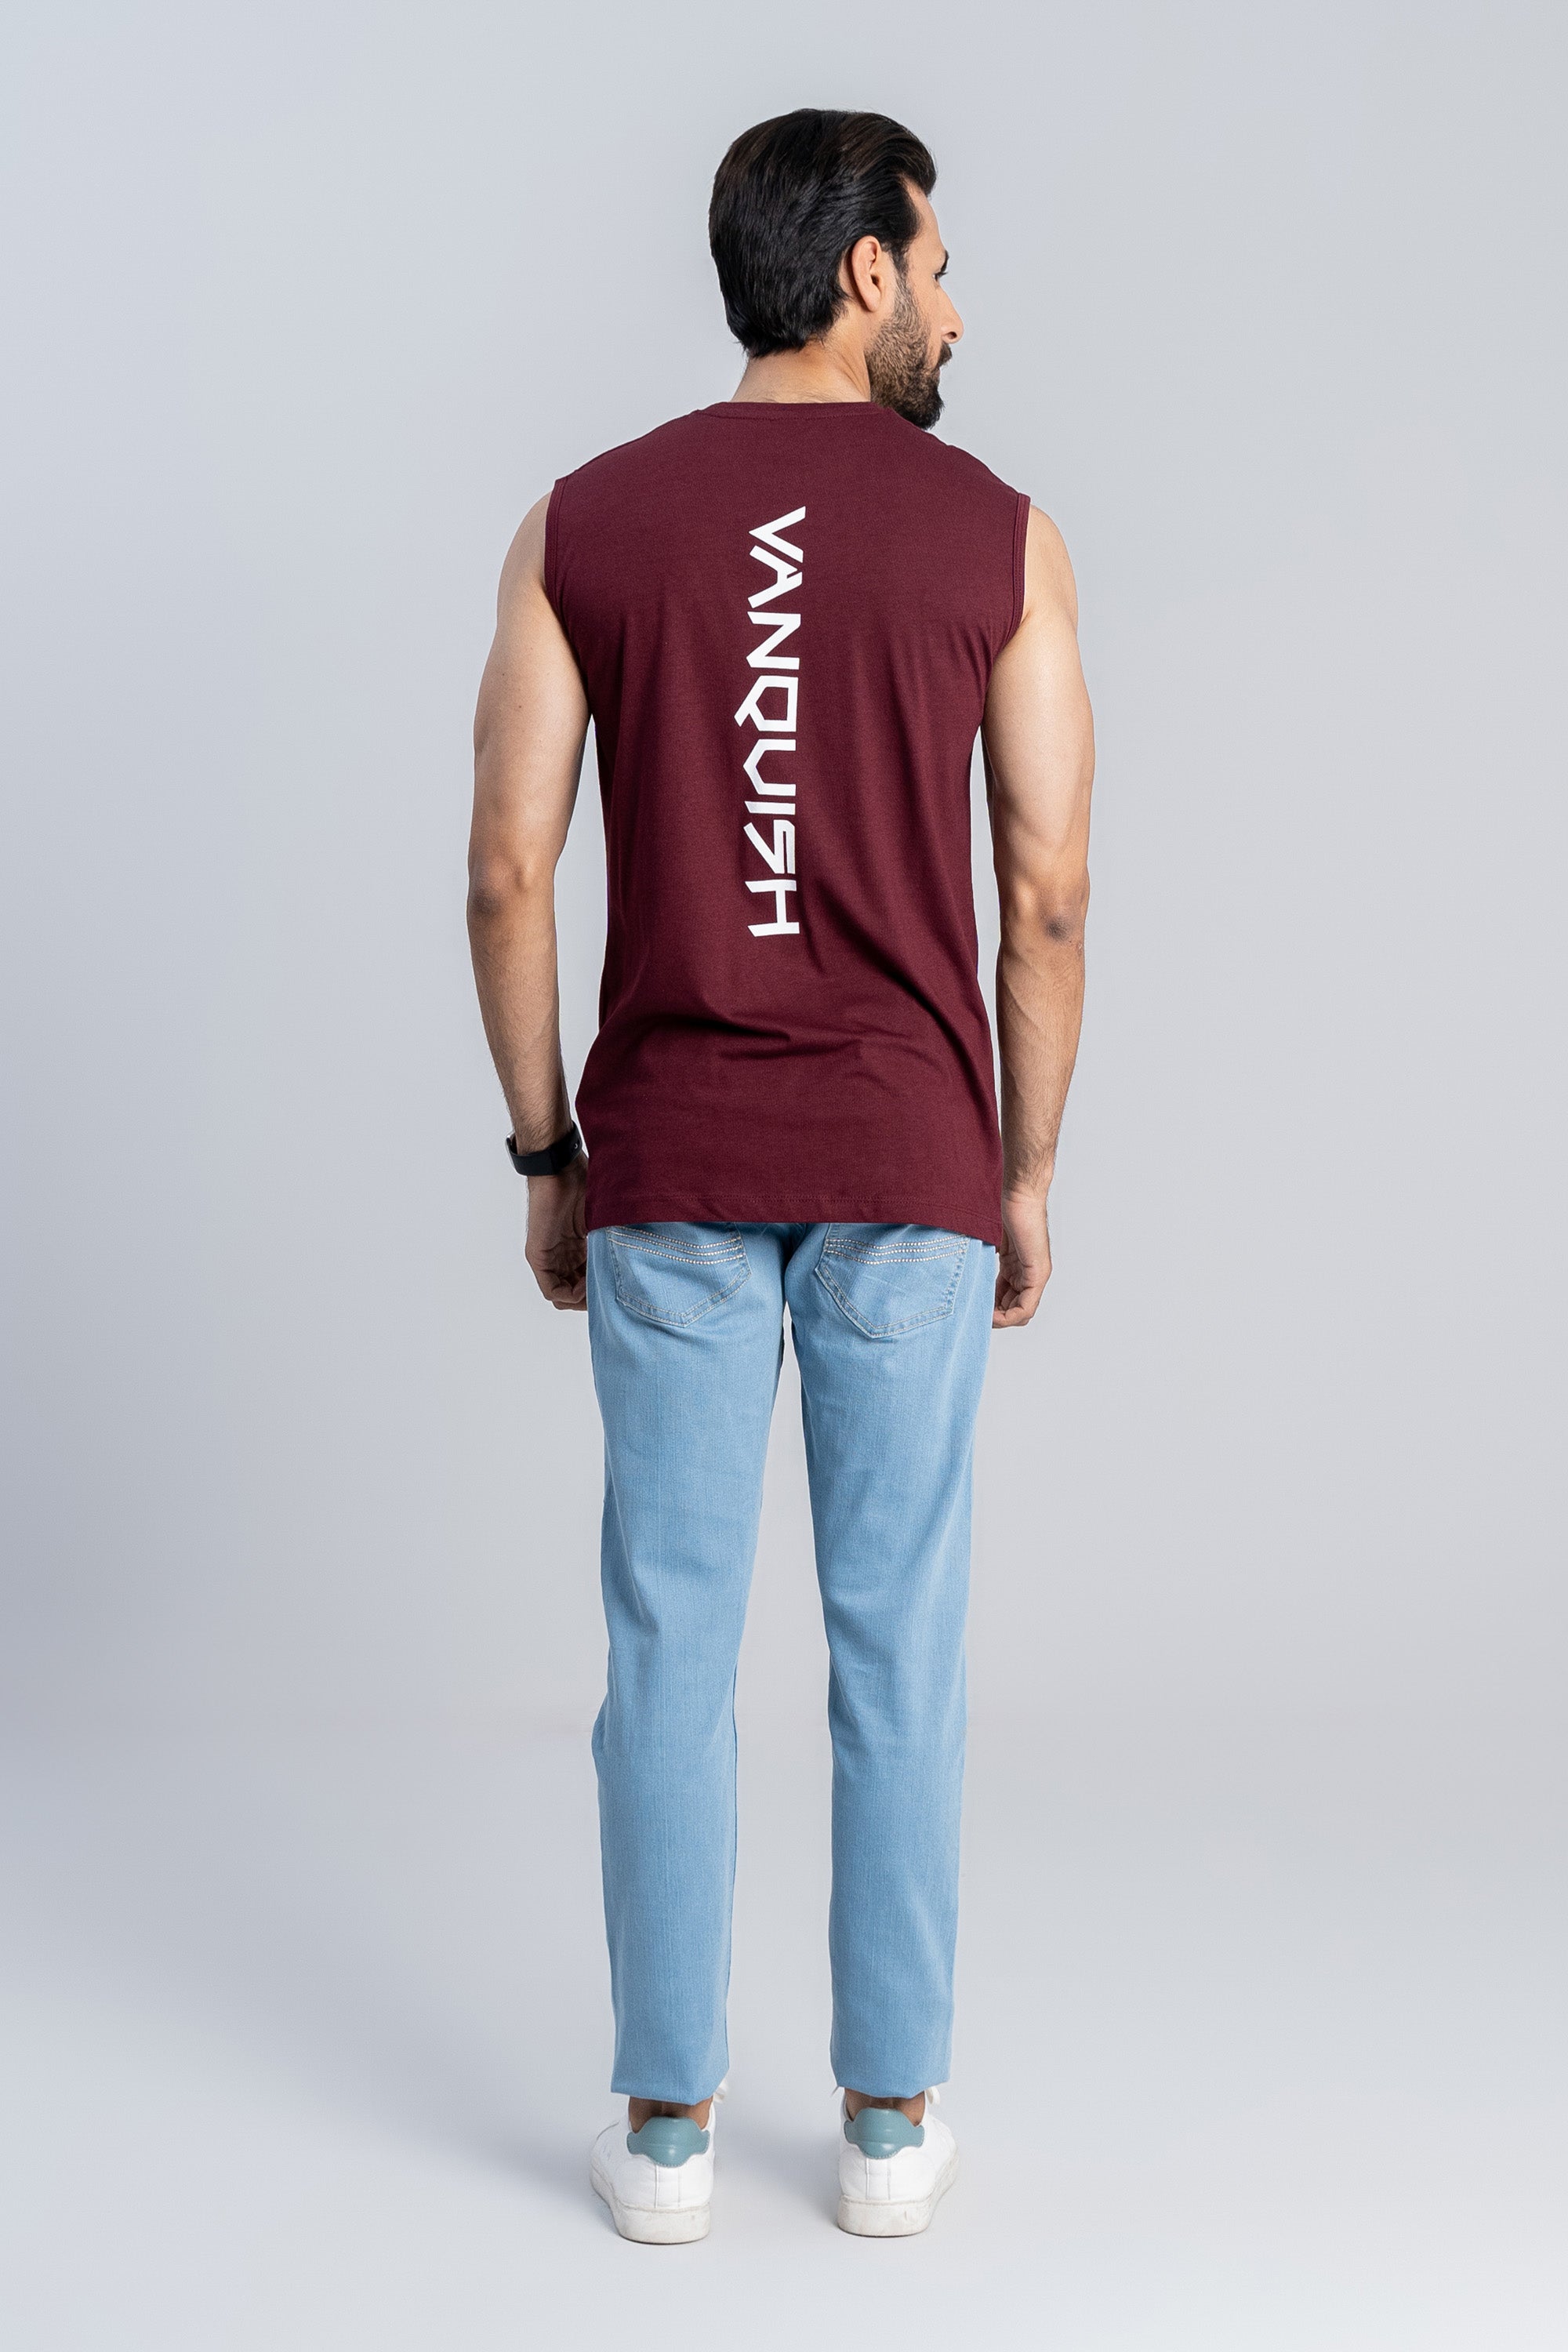 Sleeveless Maroon T-Shirt